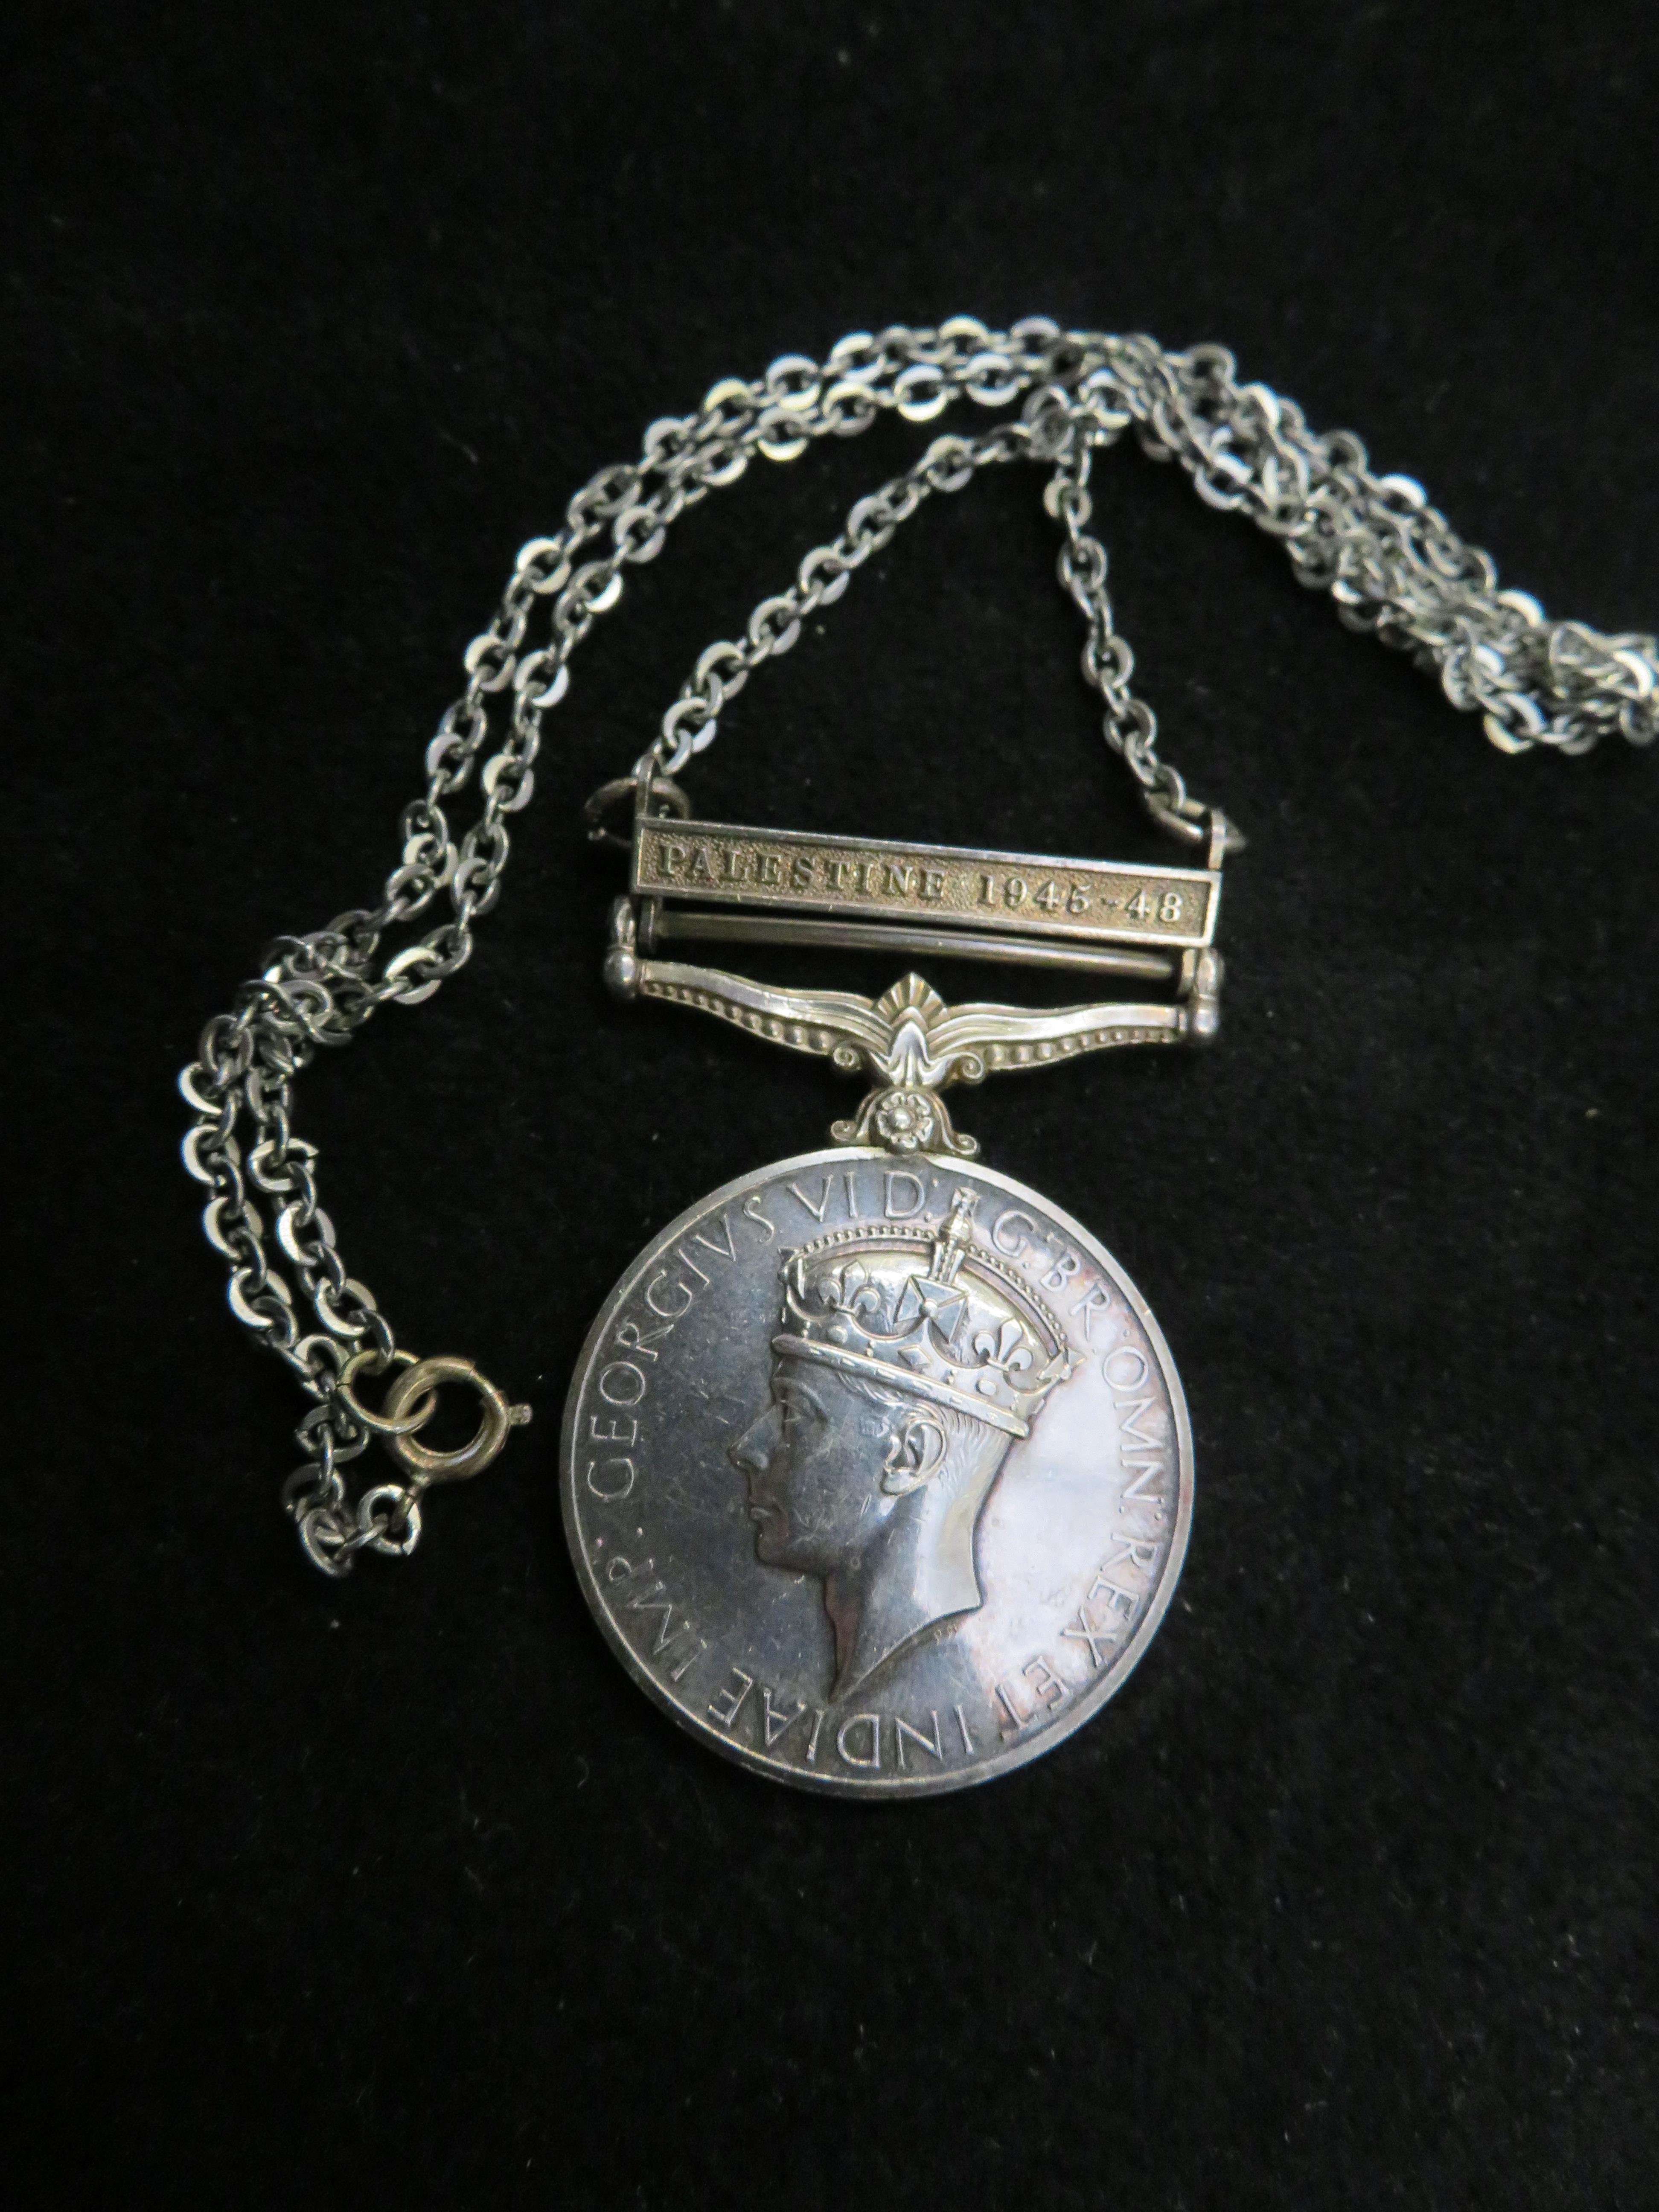 1945/48 Palestine medal awarded to G N R . C J Smi